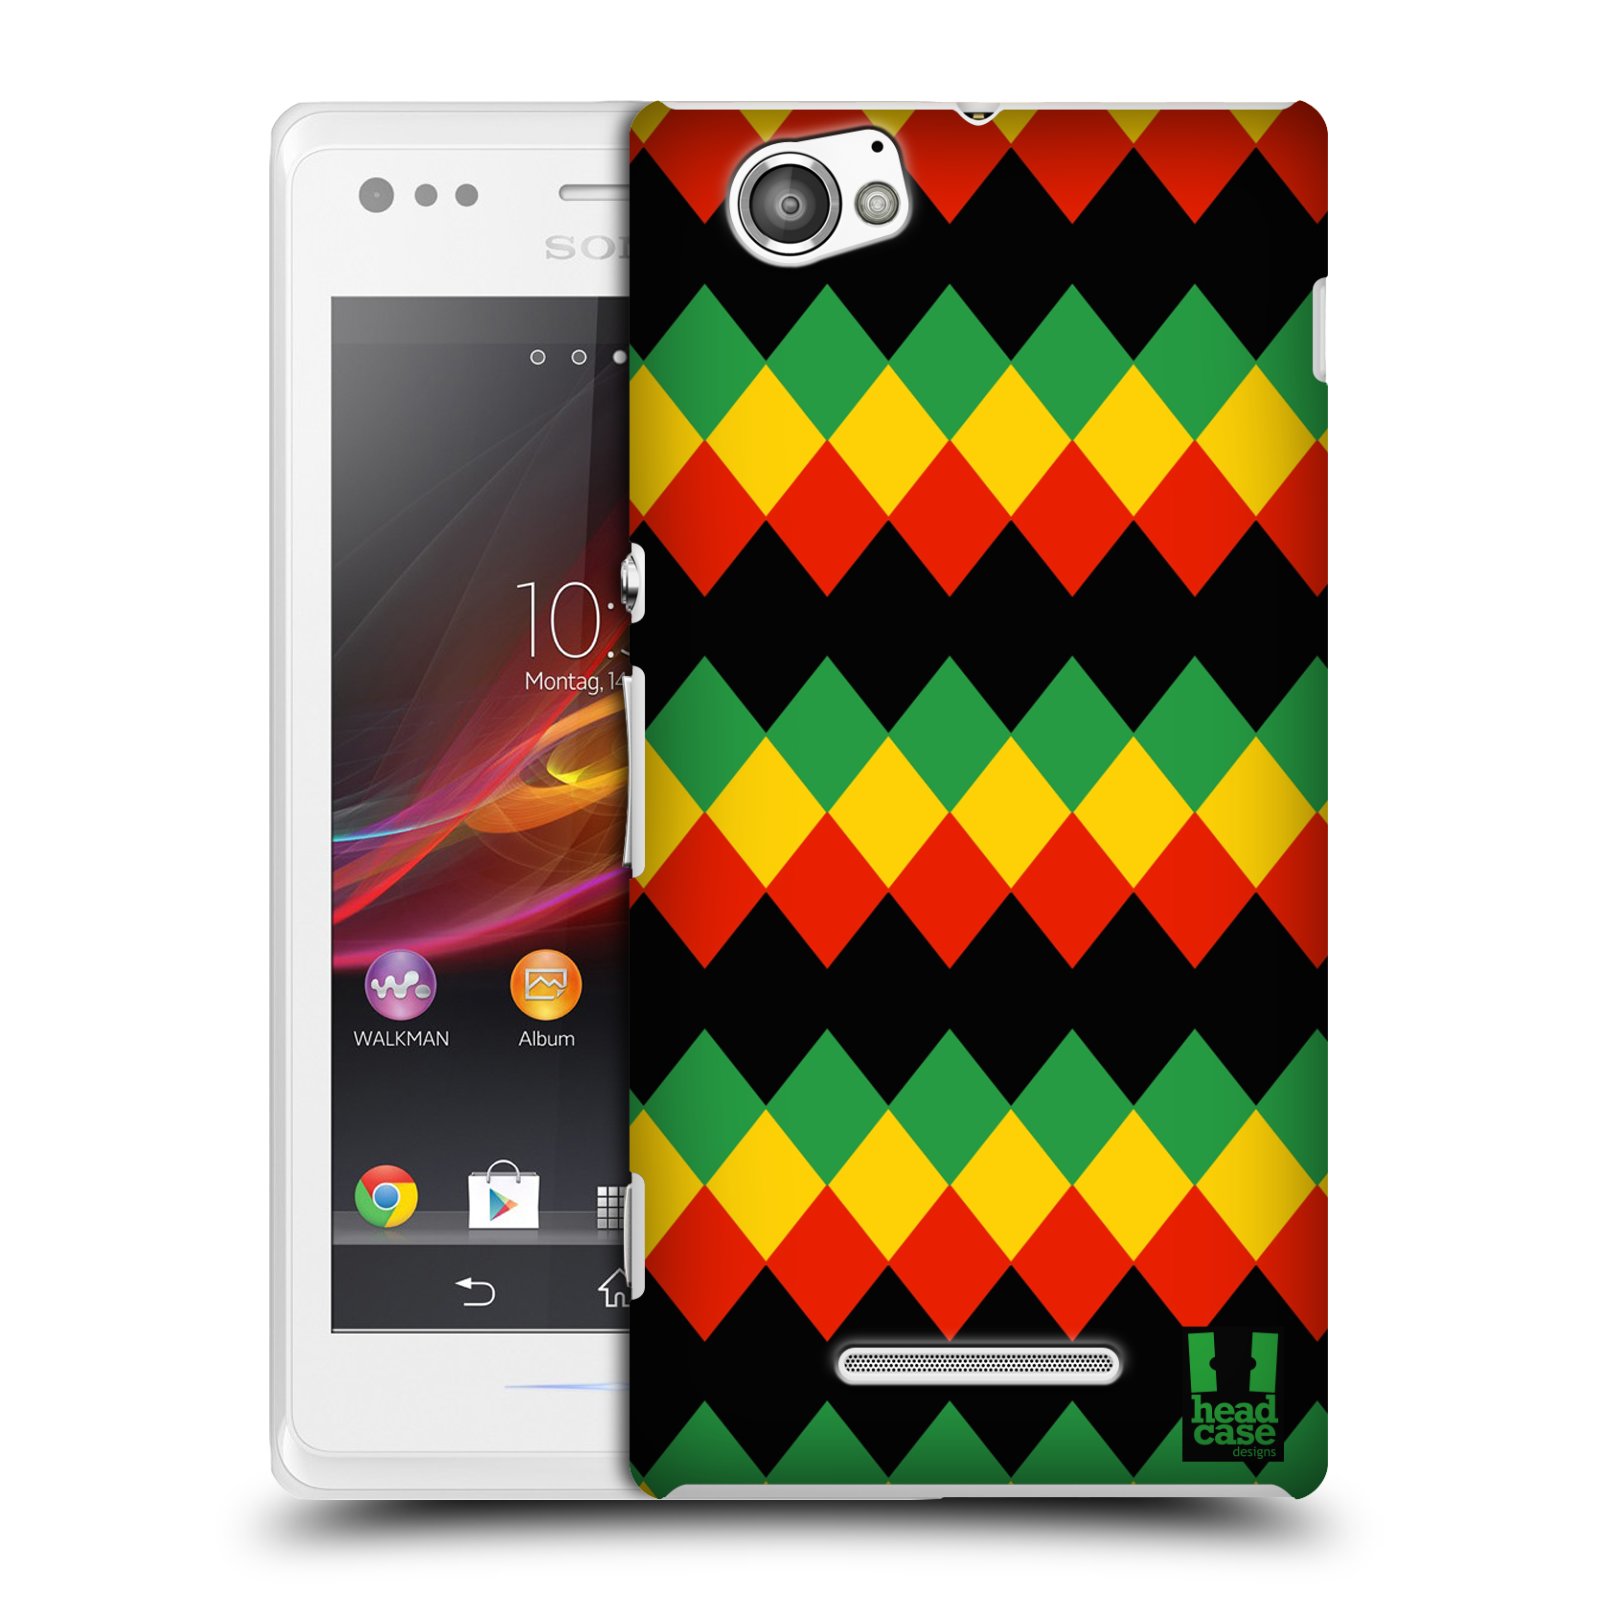 HEAD CASE plastový obal na mobil Sony Xperia M vzor Rasta barevné vzory DIAMANT